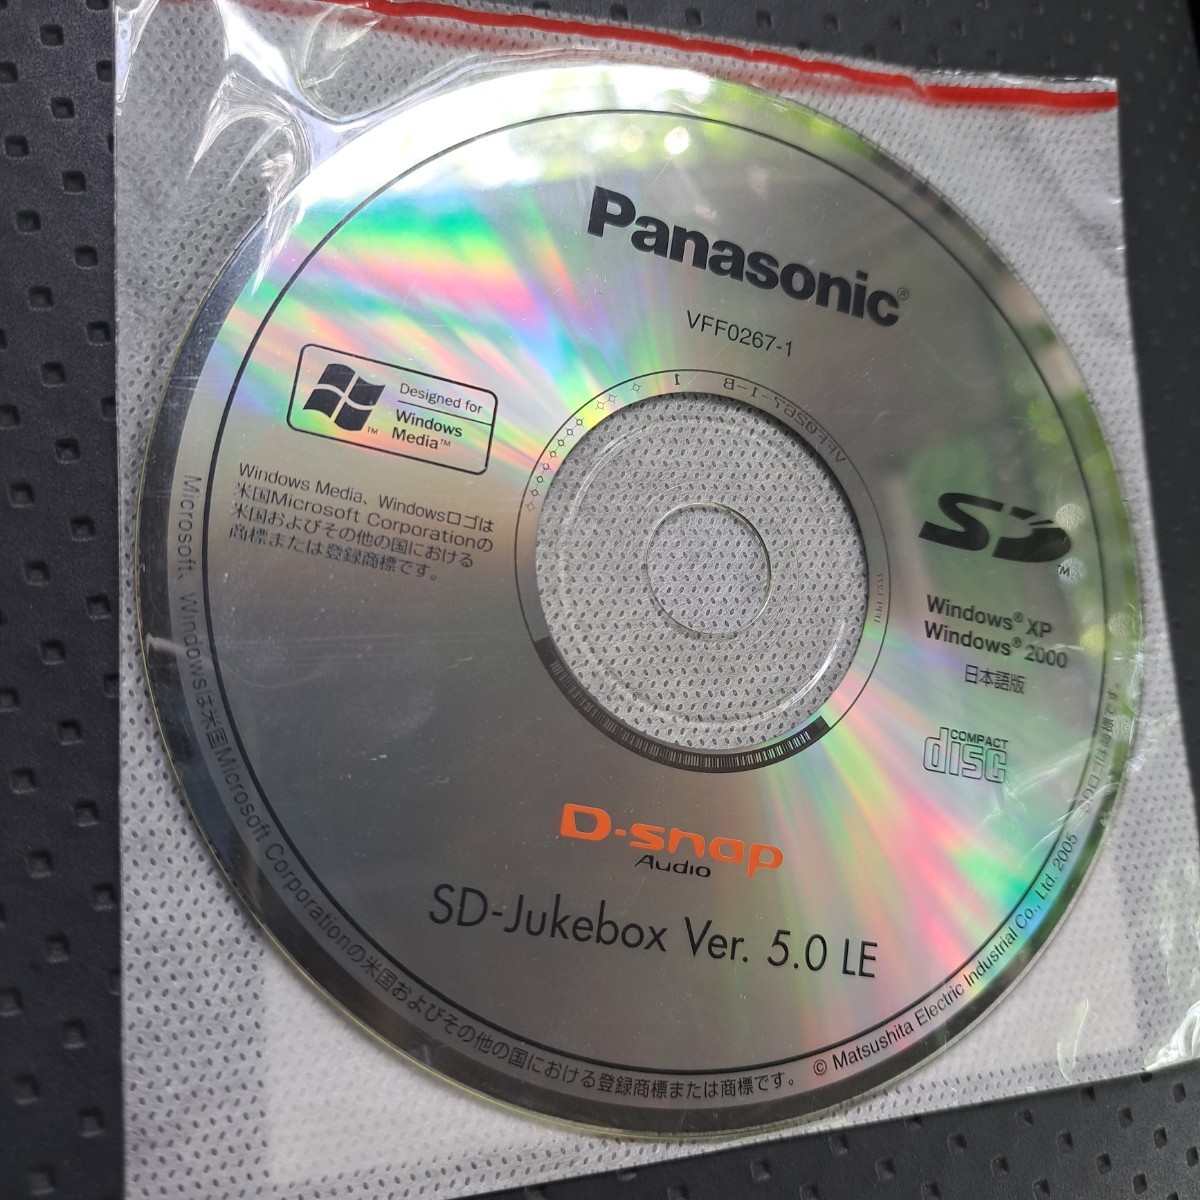 パナソニック Panasonic D-snap SD-Jukebox CD-ROM Ver5.0 LE VFF0267